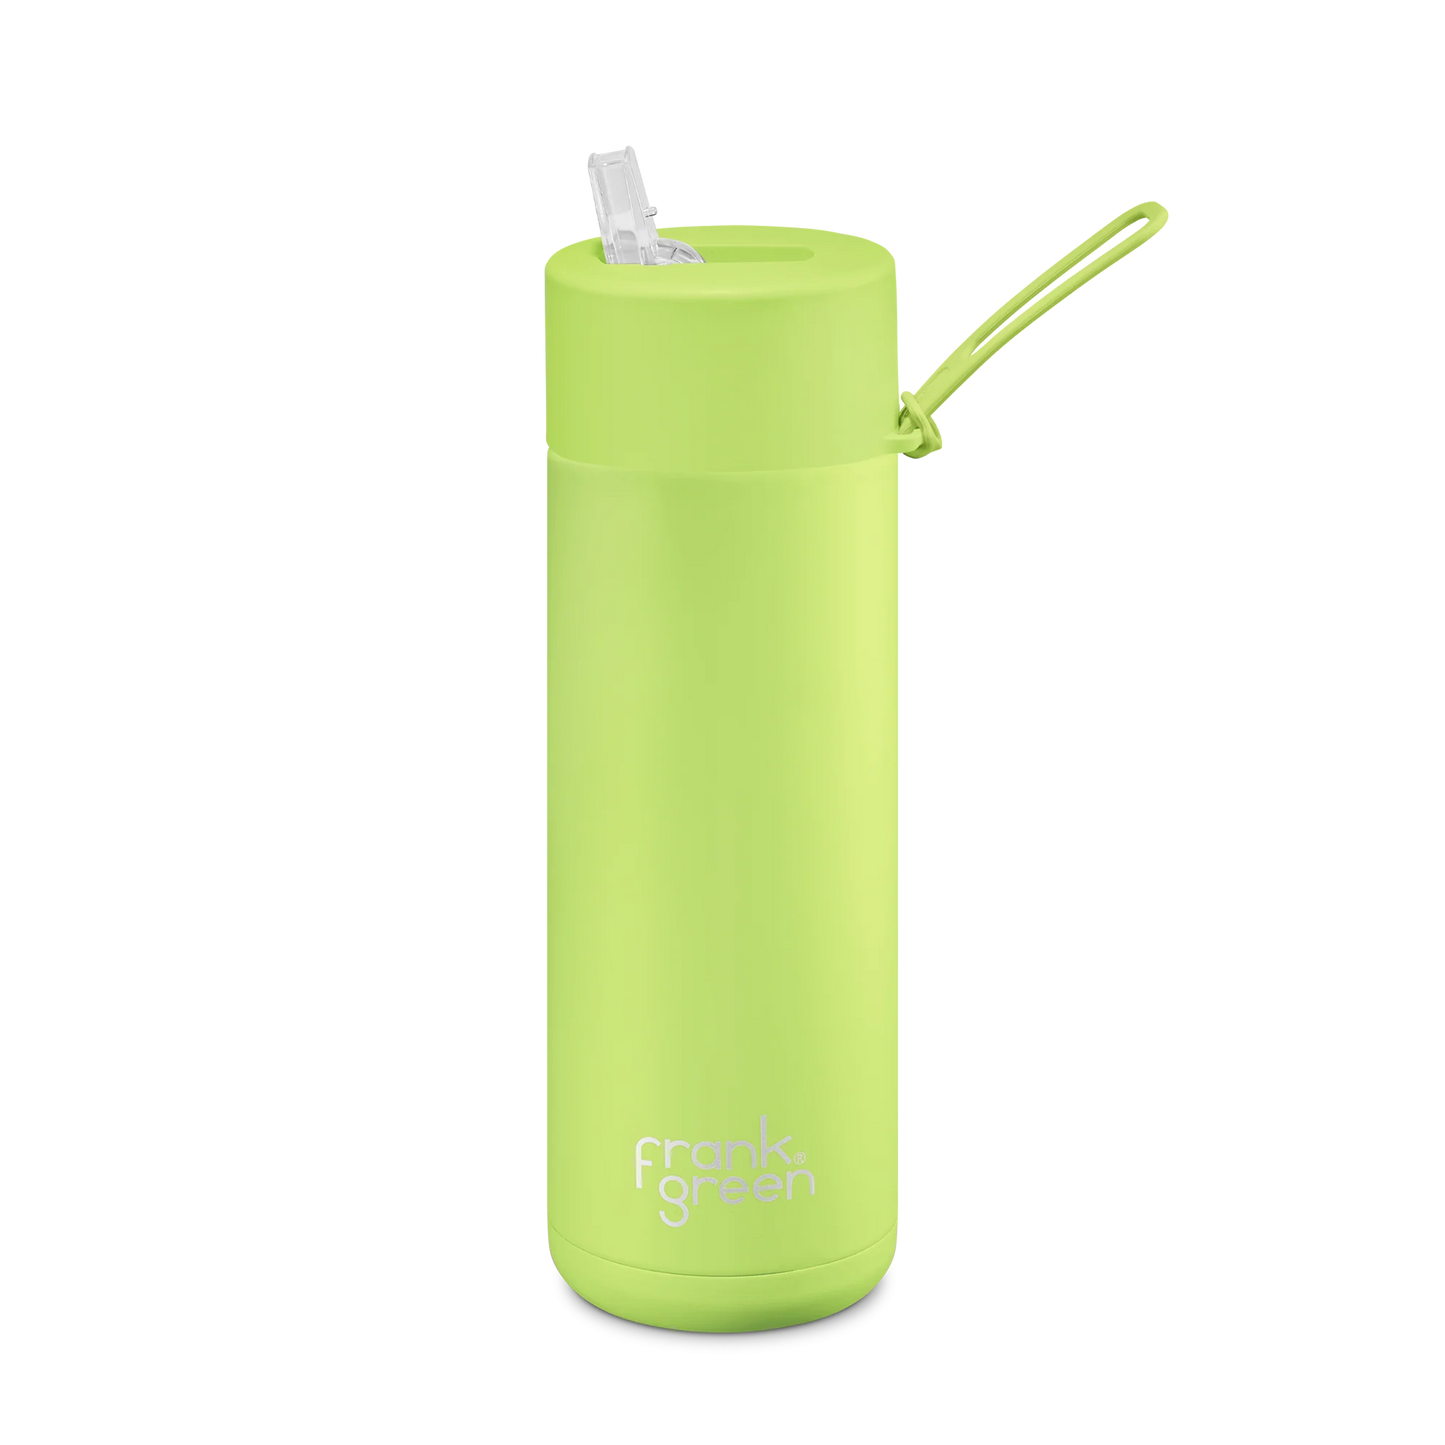 FRANK GREEN - Straw Lid Ceramic Reusable Bottle 20oz /595ml